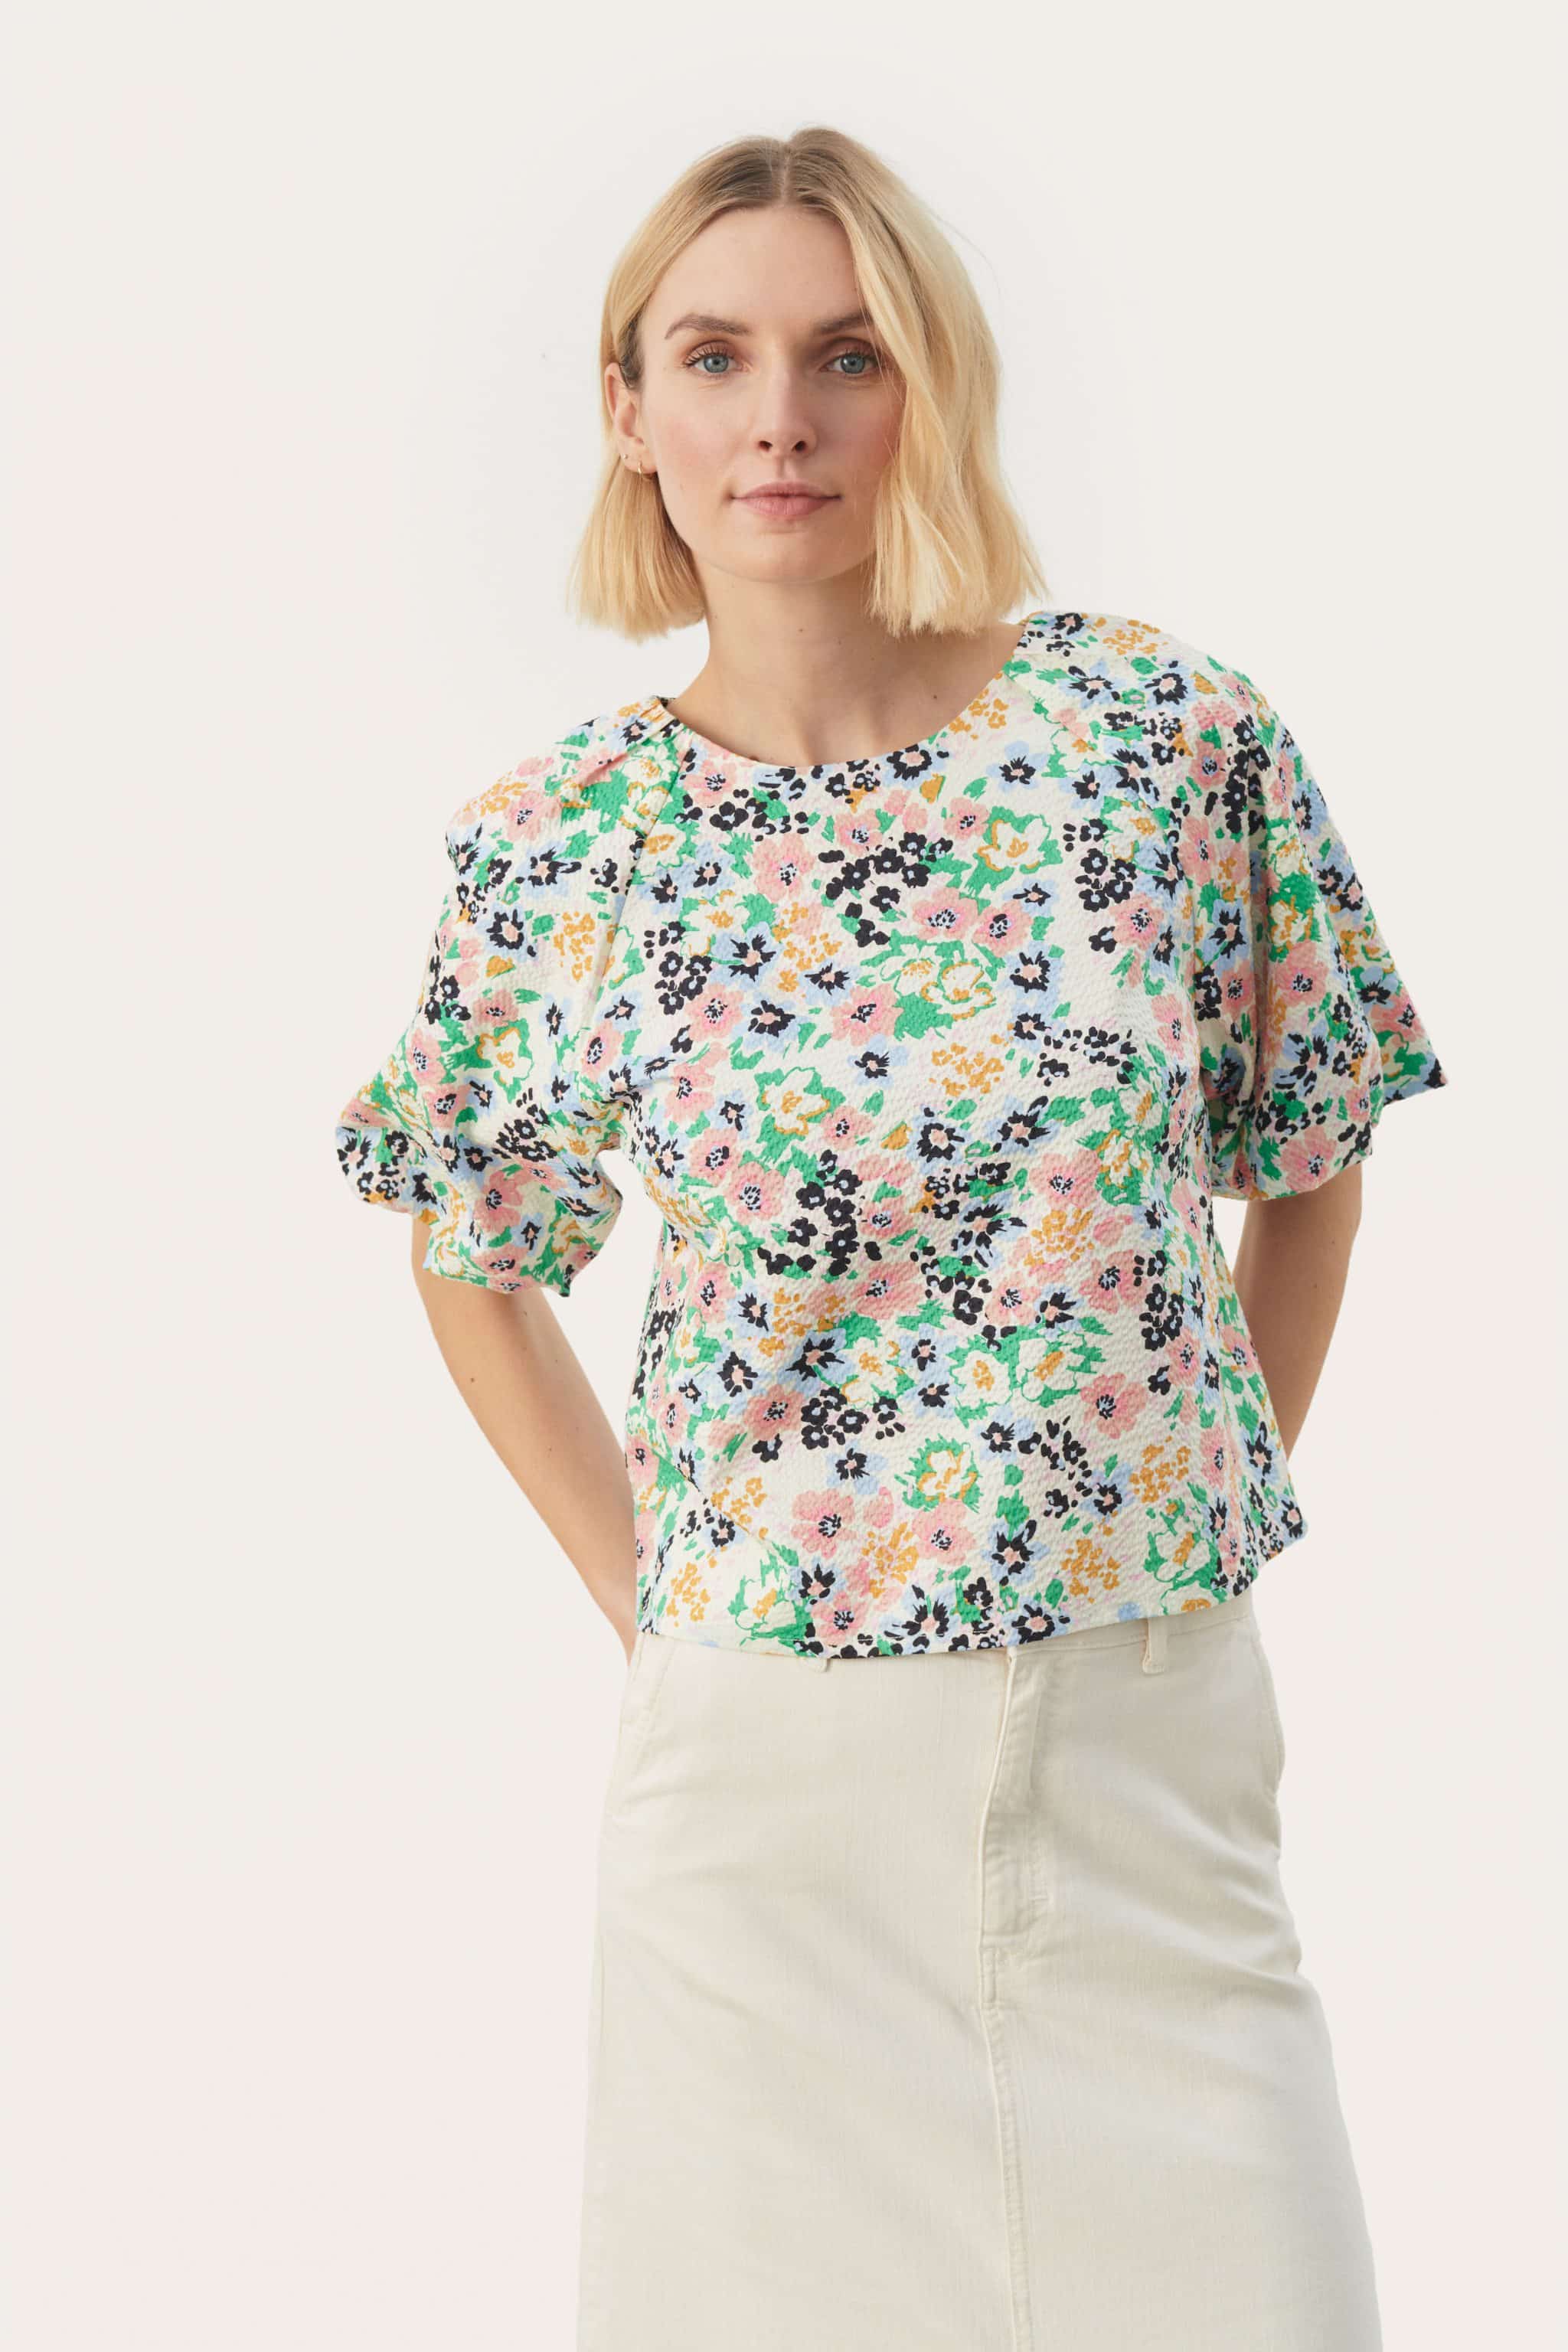 Women's Feminine Floral Top | Sheer Sleeves | Green Multi